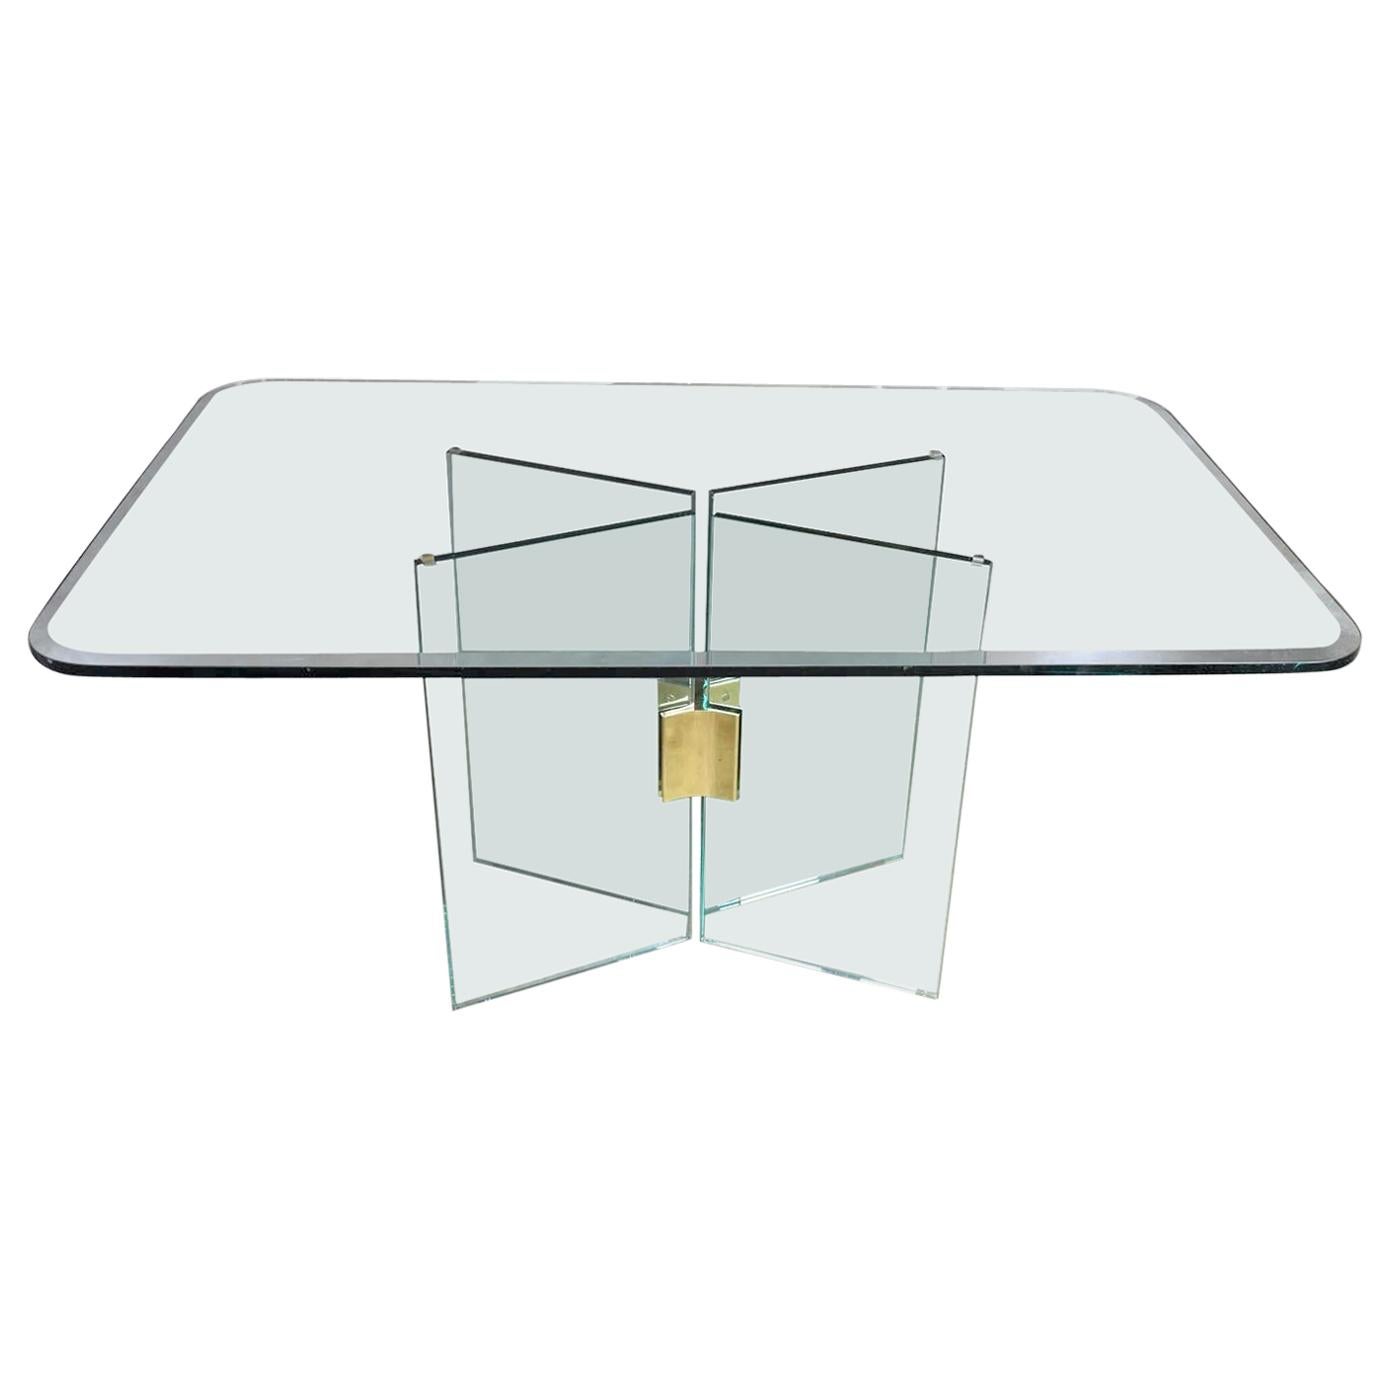 Moderner Esstisch aus Glas mit Messingbeschlägen, Pace Kollektion zugeschrieben